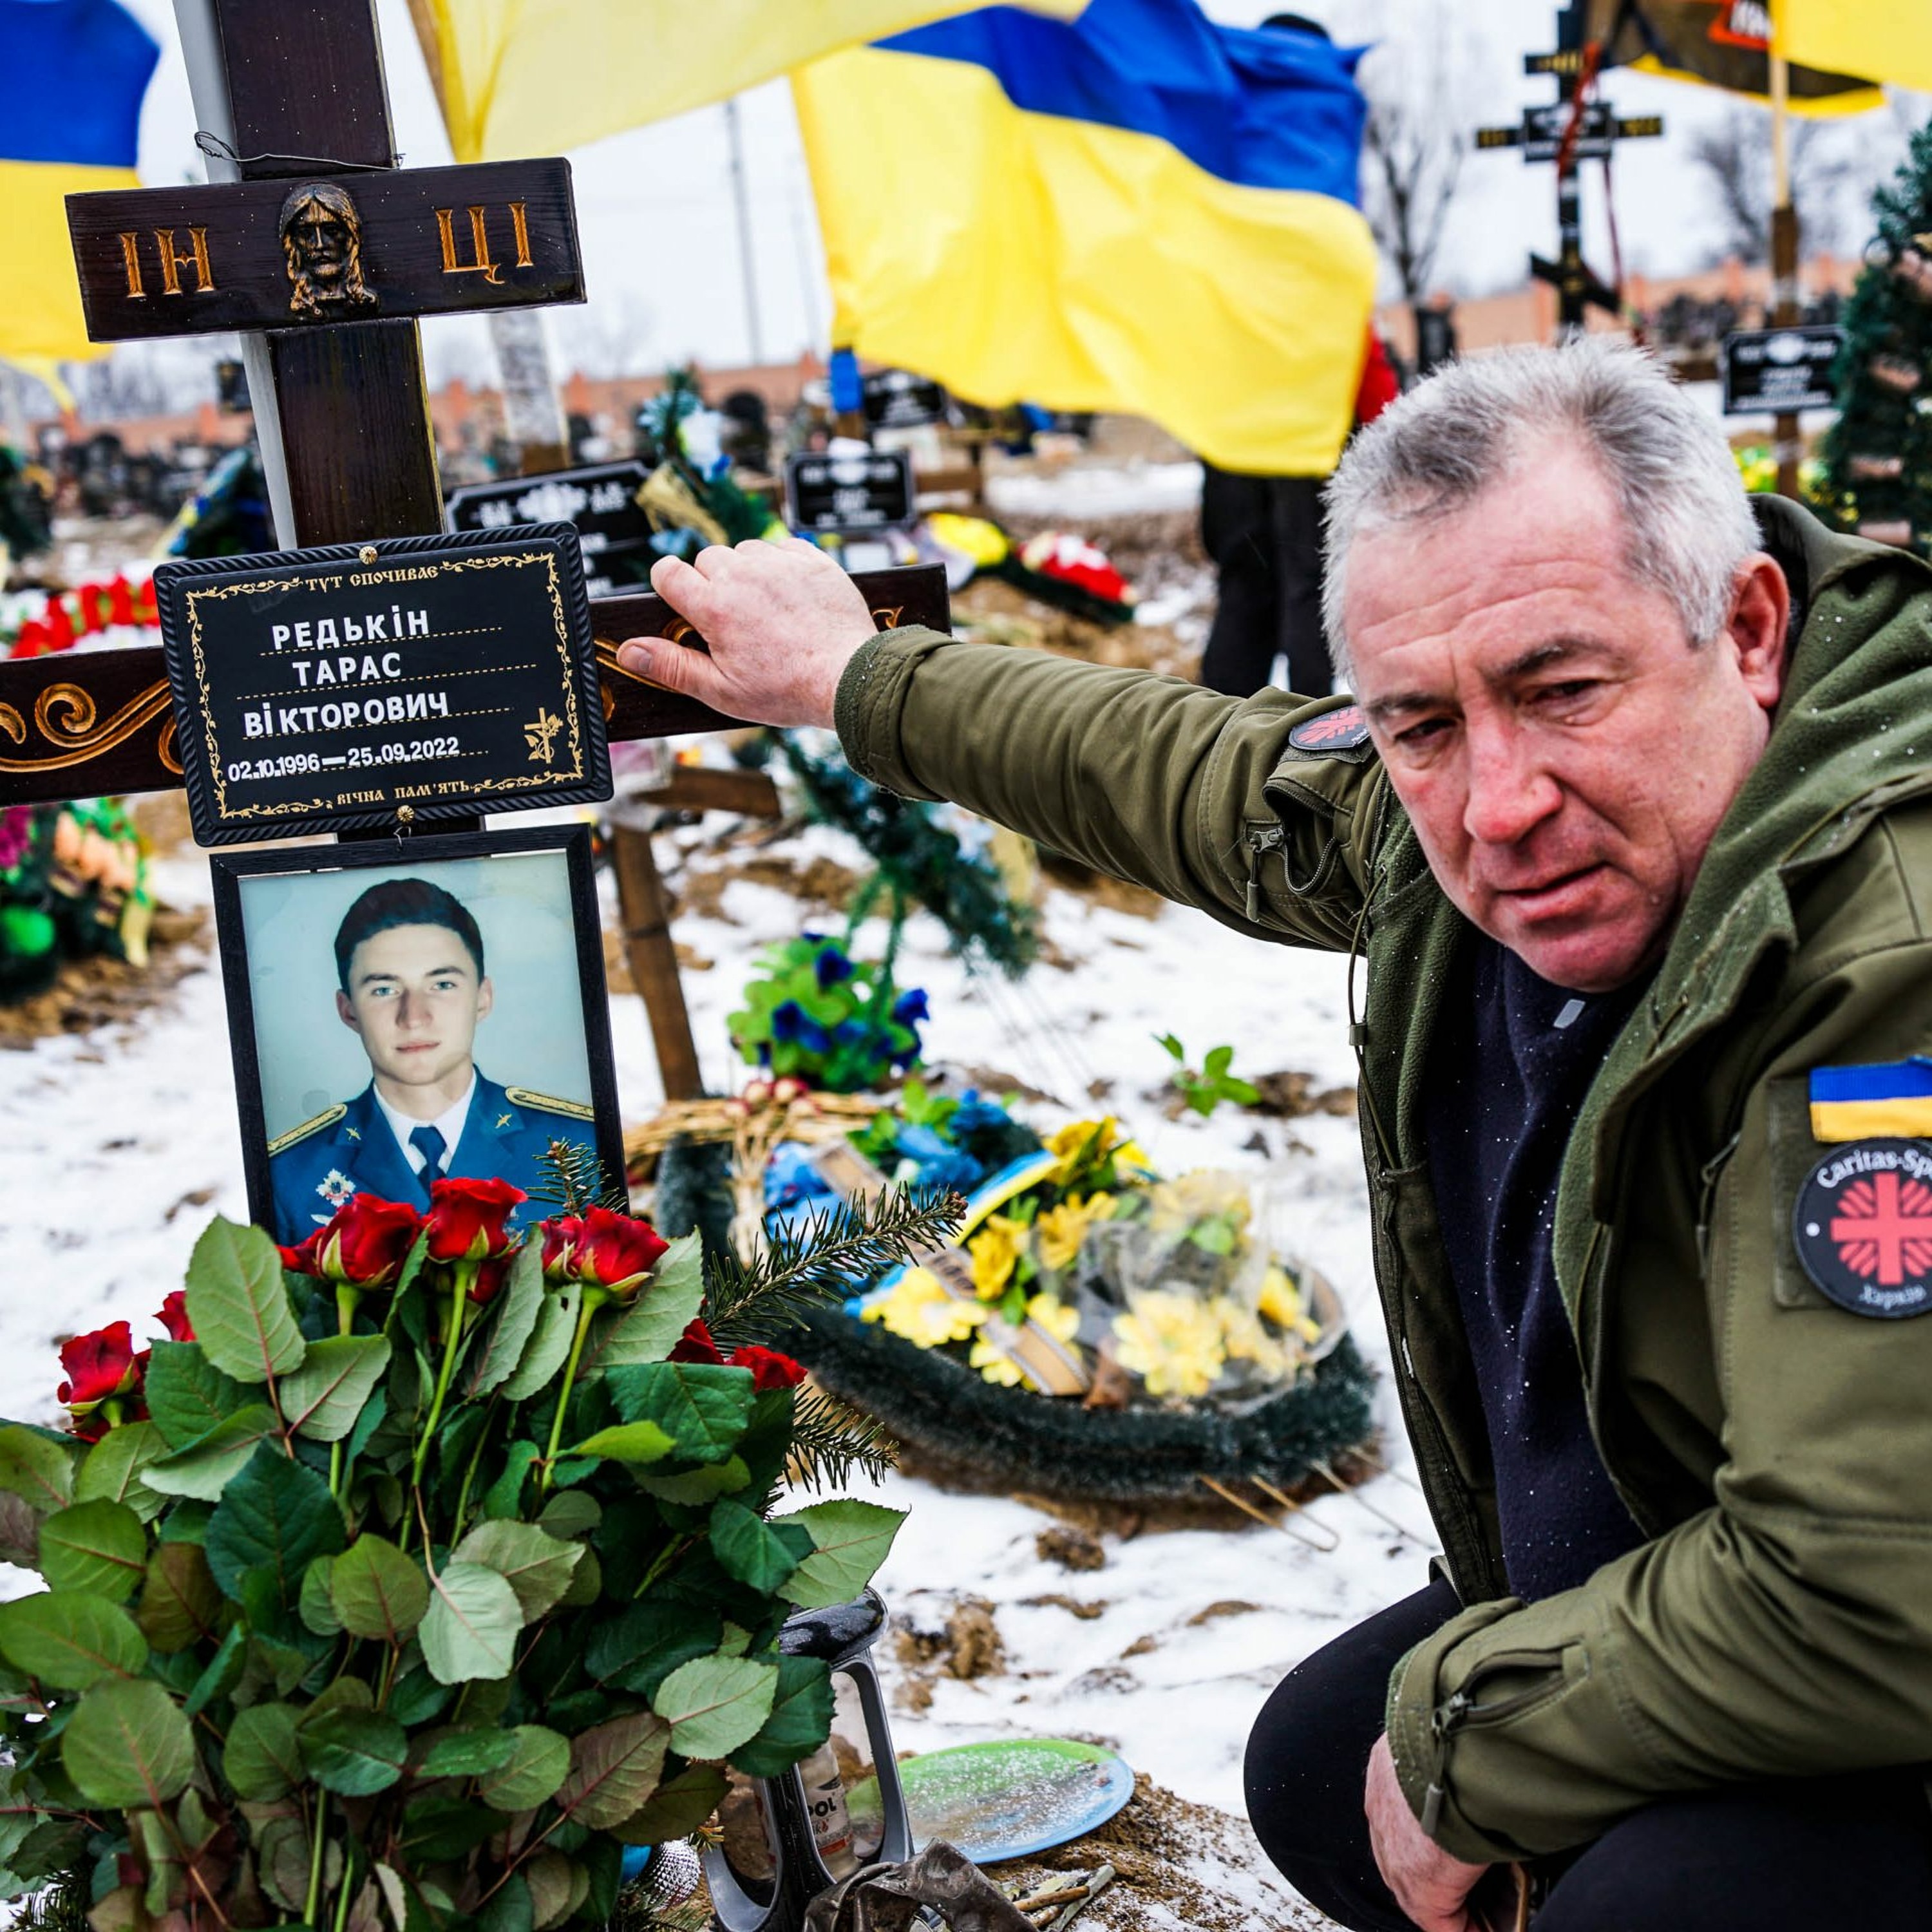 Boli sme na Ukrajine: Zažili šok z deštrukcie, ale aj očarenie dobrými ľuďmi